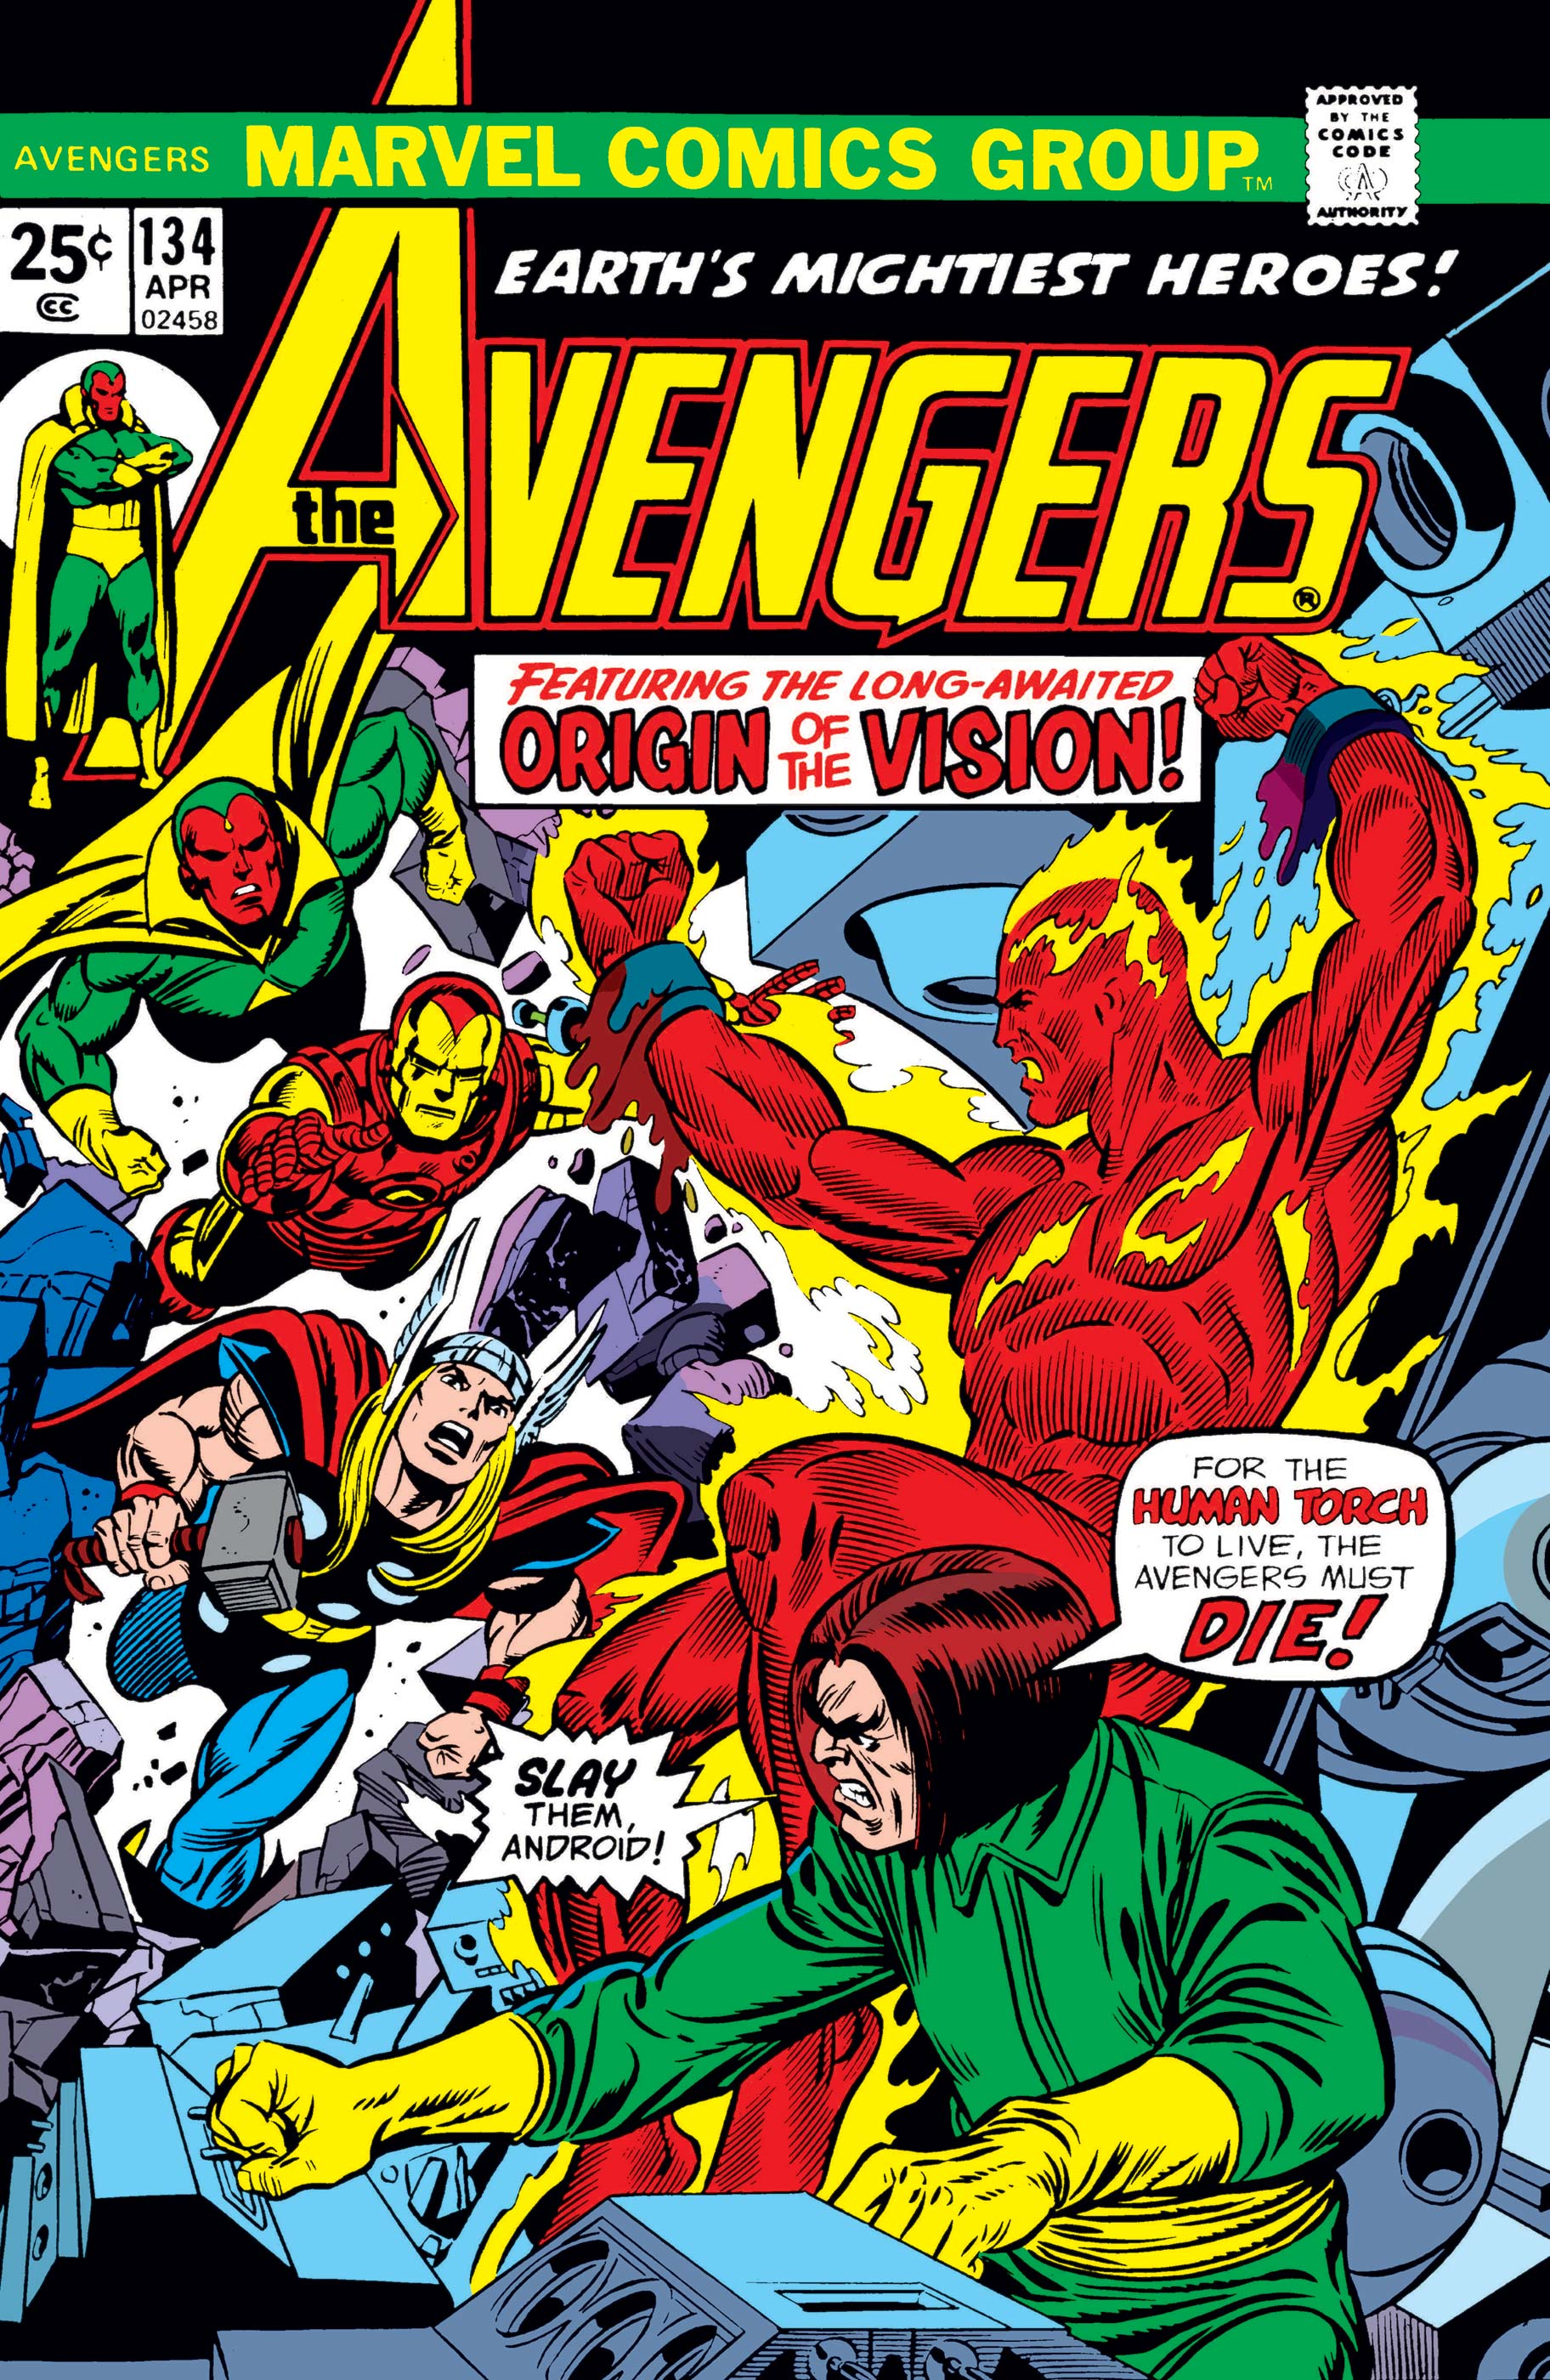 Avengers (1963) #134 | Comic Issues | Marvel